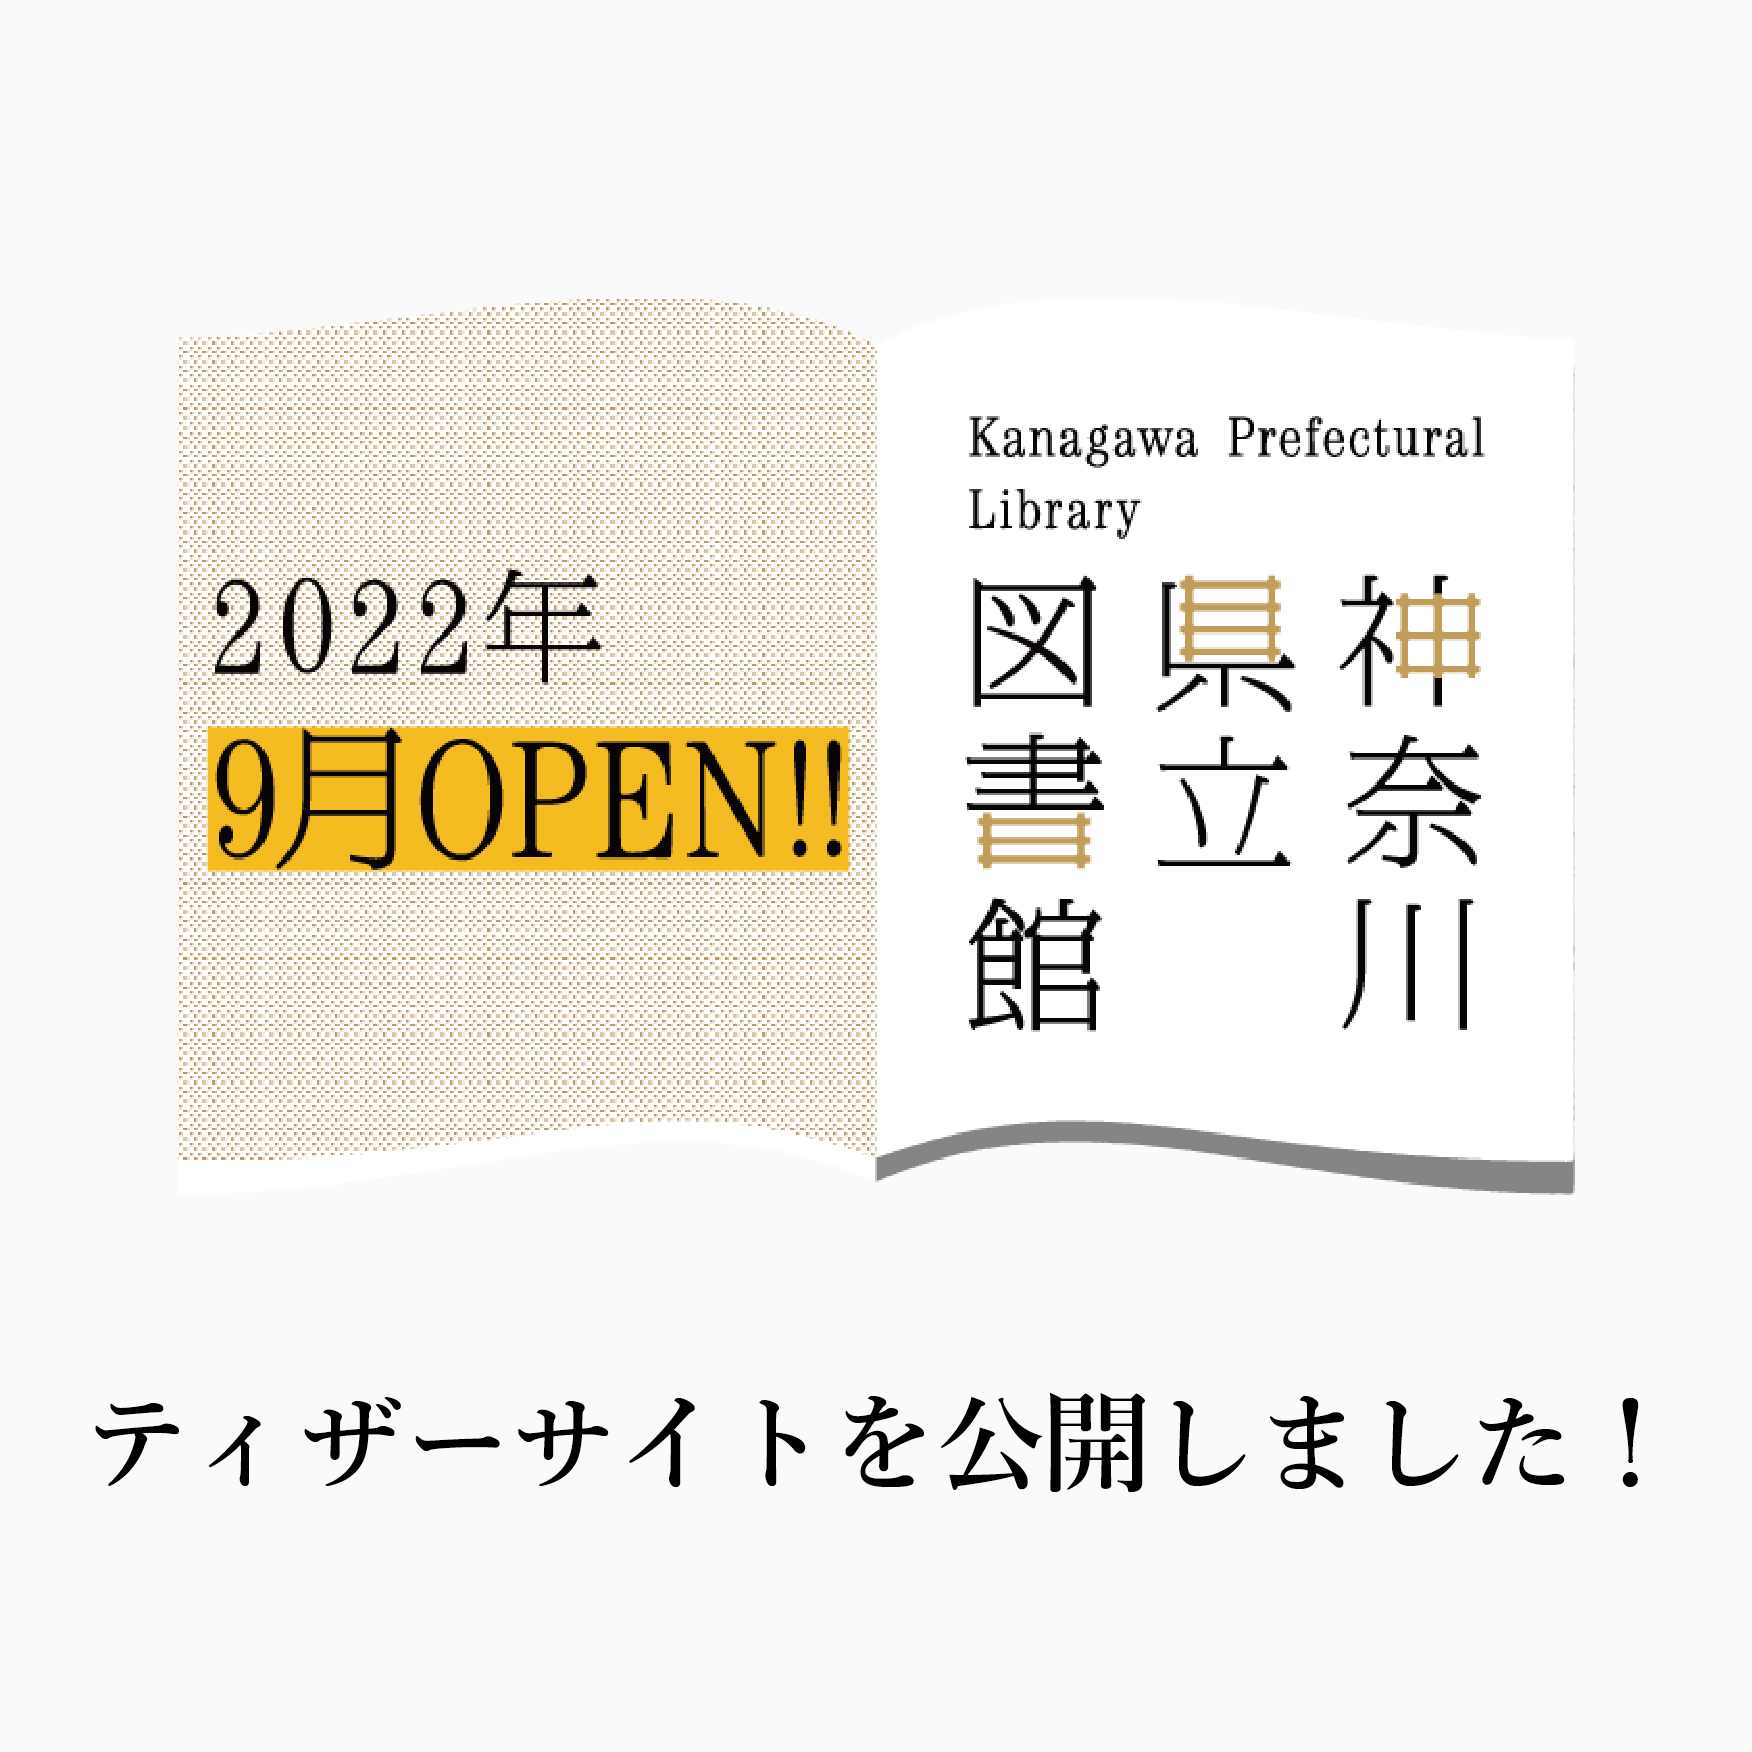 神奈川県立の図書館 Kanagawa Lib Twitter